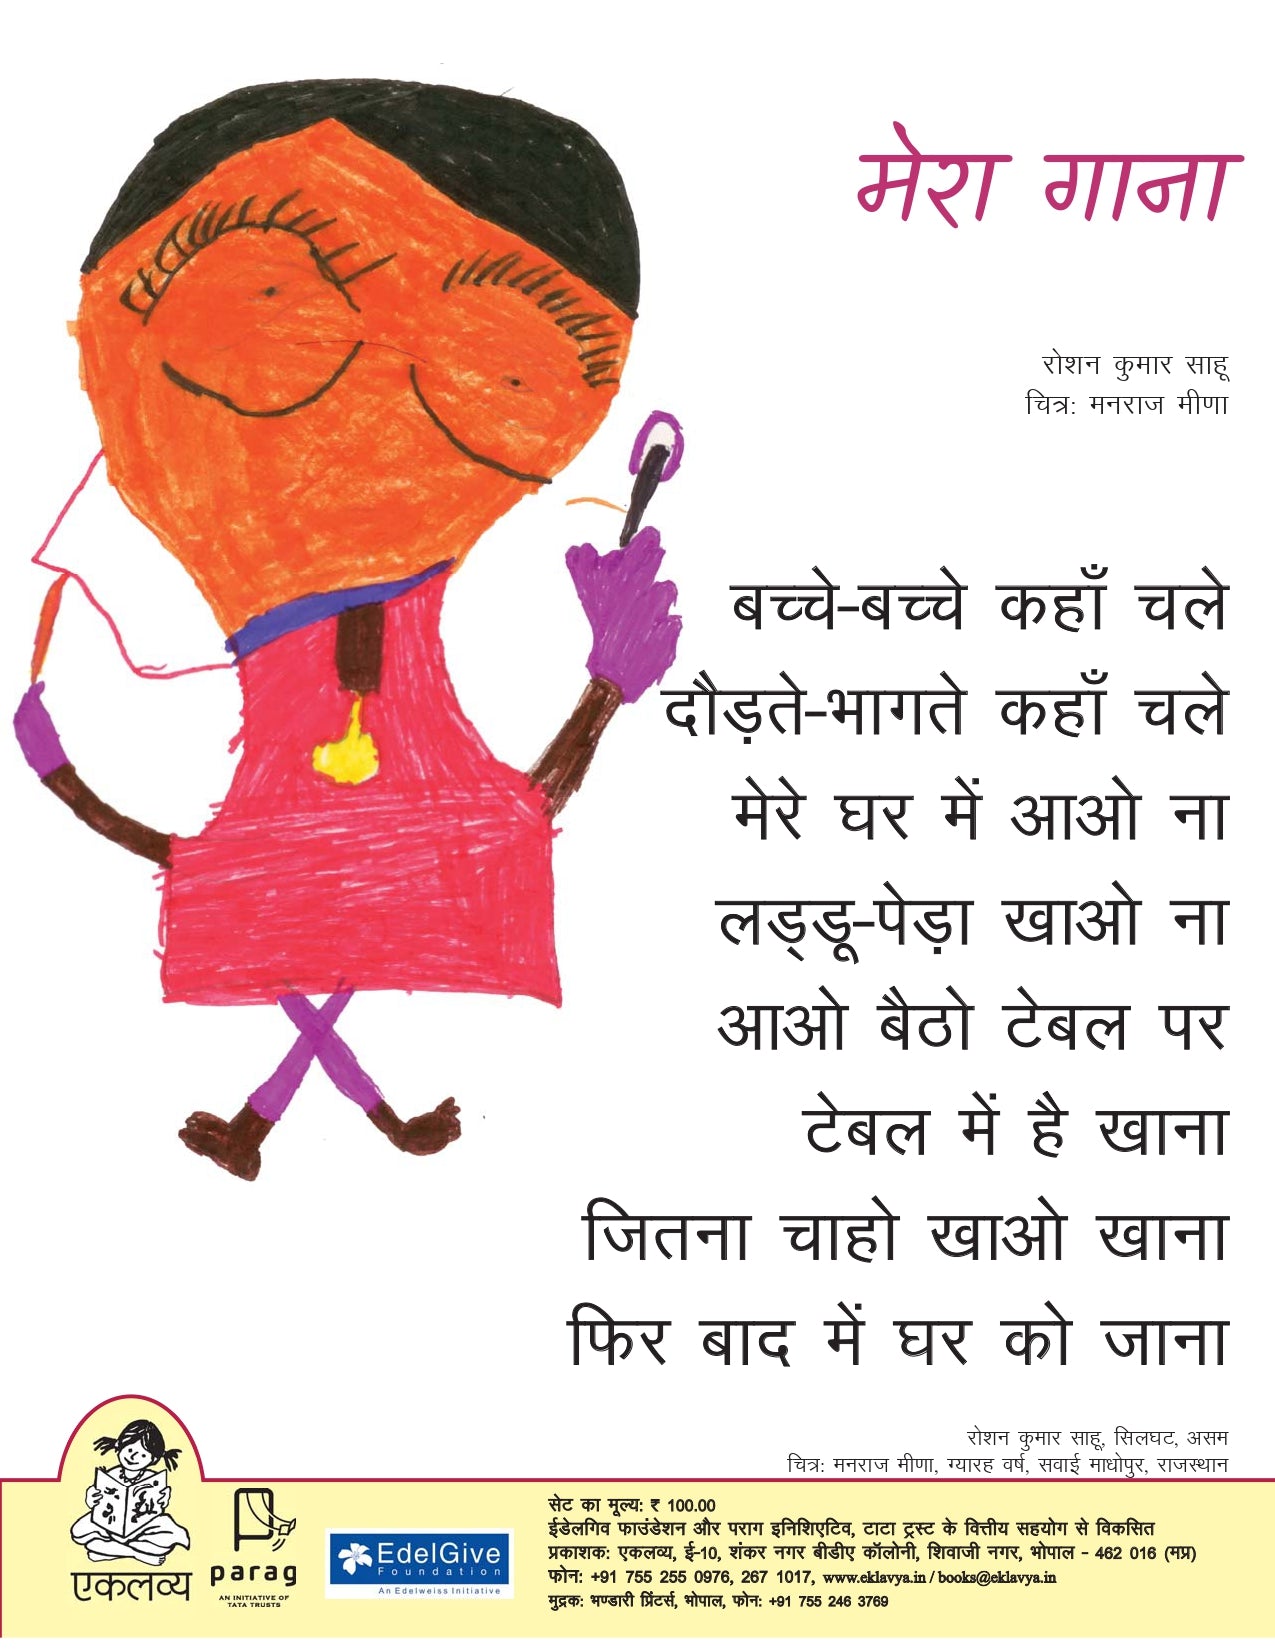 Arty's World - Hindi Day poster making / Hindi Diwas... | Facebook